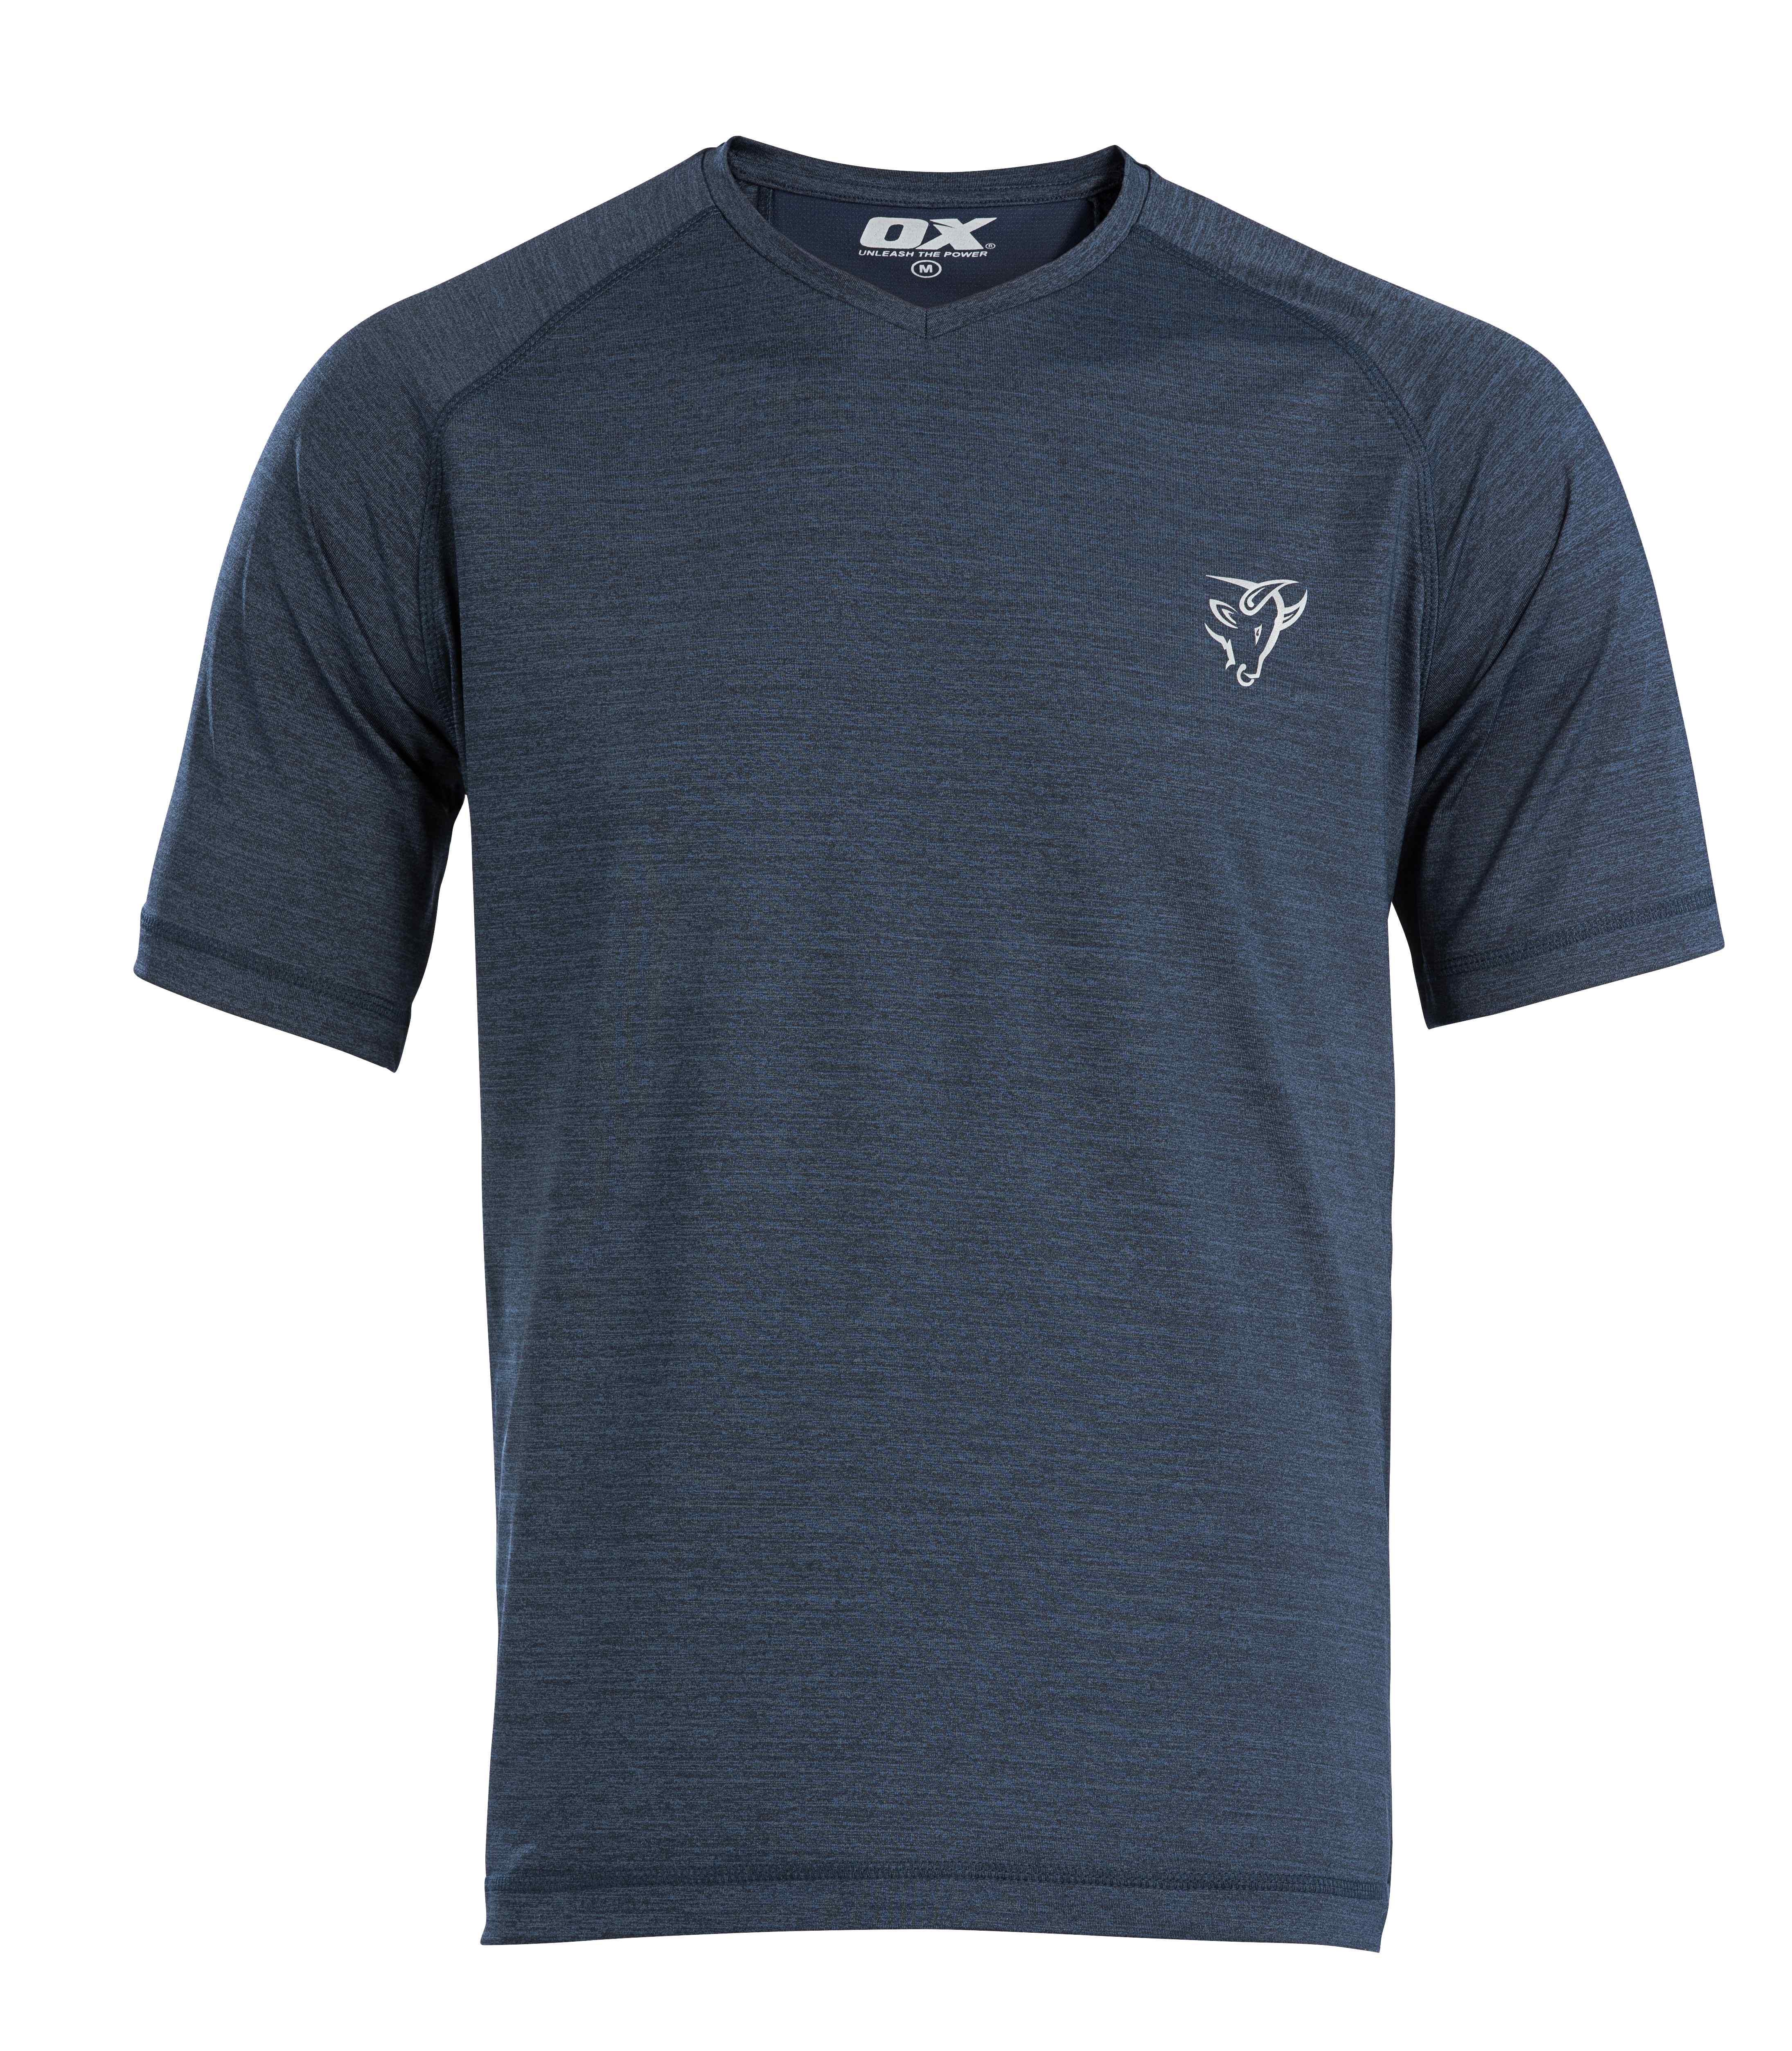 OX Tech Crew T-Shirt Navy - L